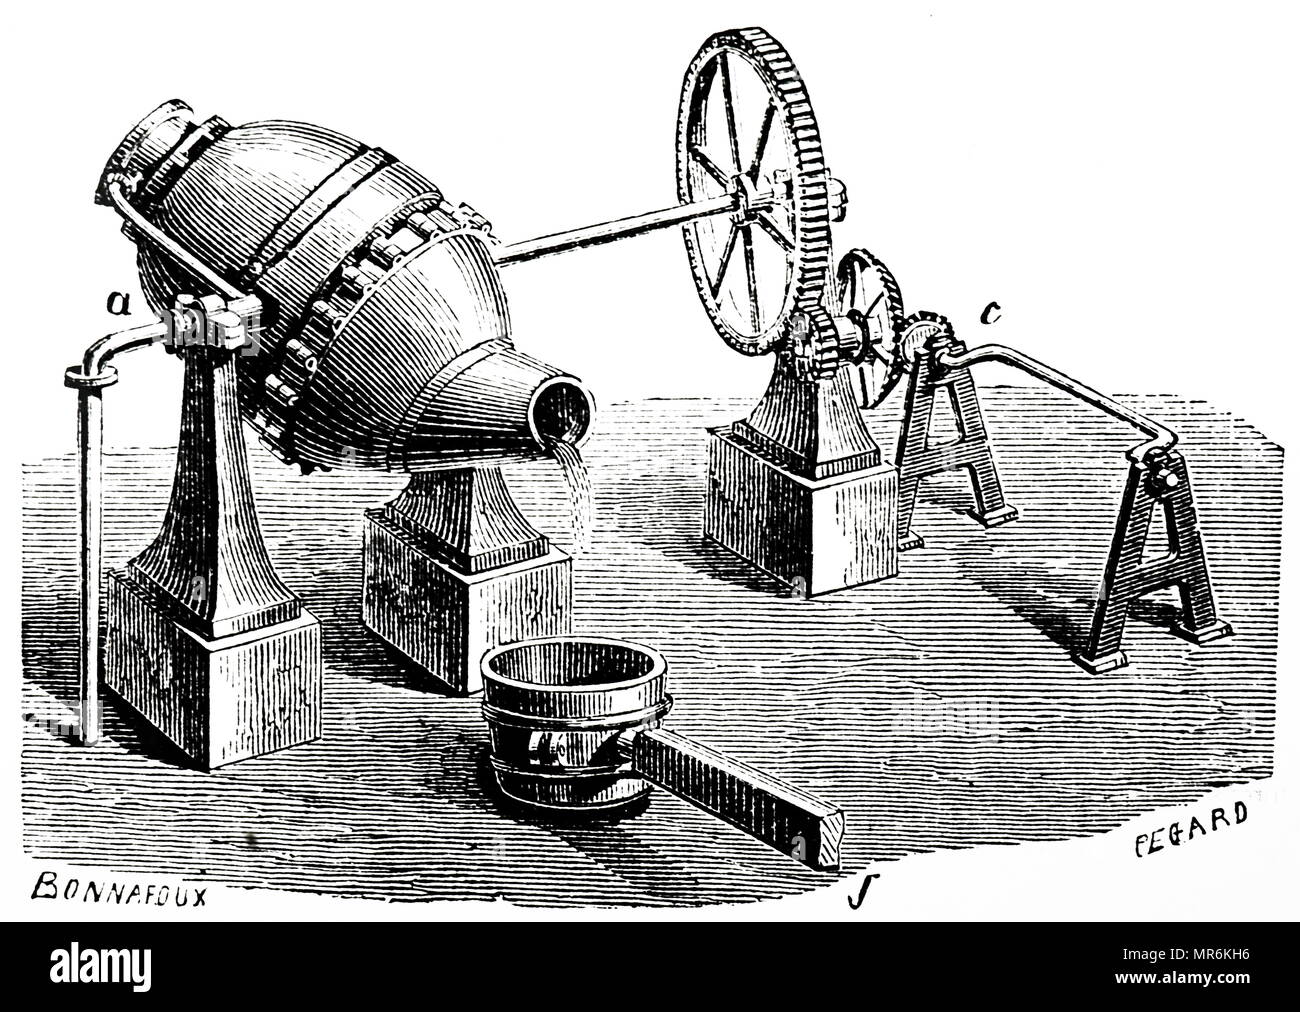 Grabado representando el proceso Bessemer para la producción masiva de  acero a partir de arrabio líquido antes del desarrollo de la Chimenea Horno.  Nombrado después de Henry Bessemer (1813-1898), un inventor Inglés.